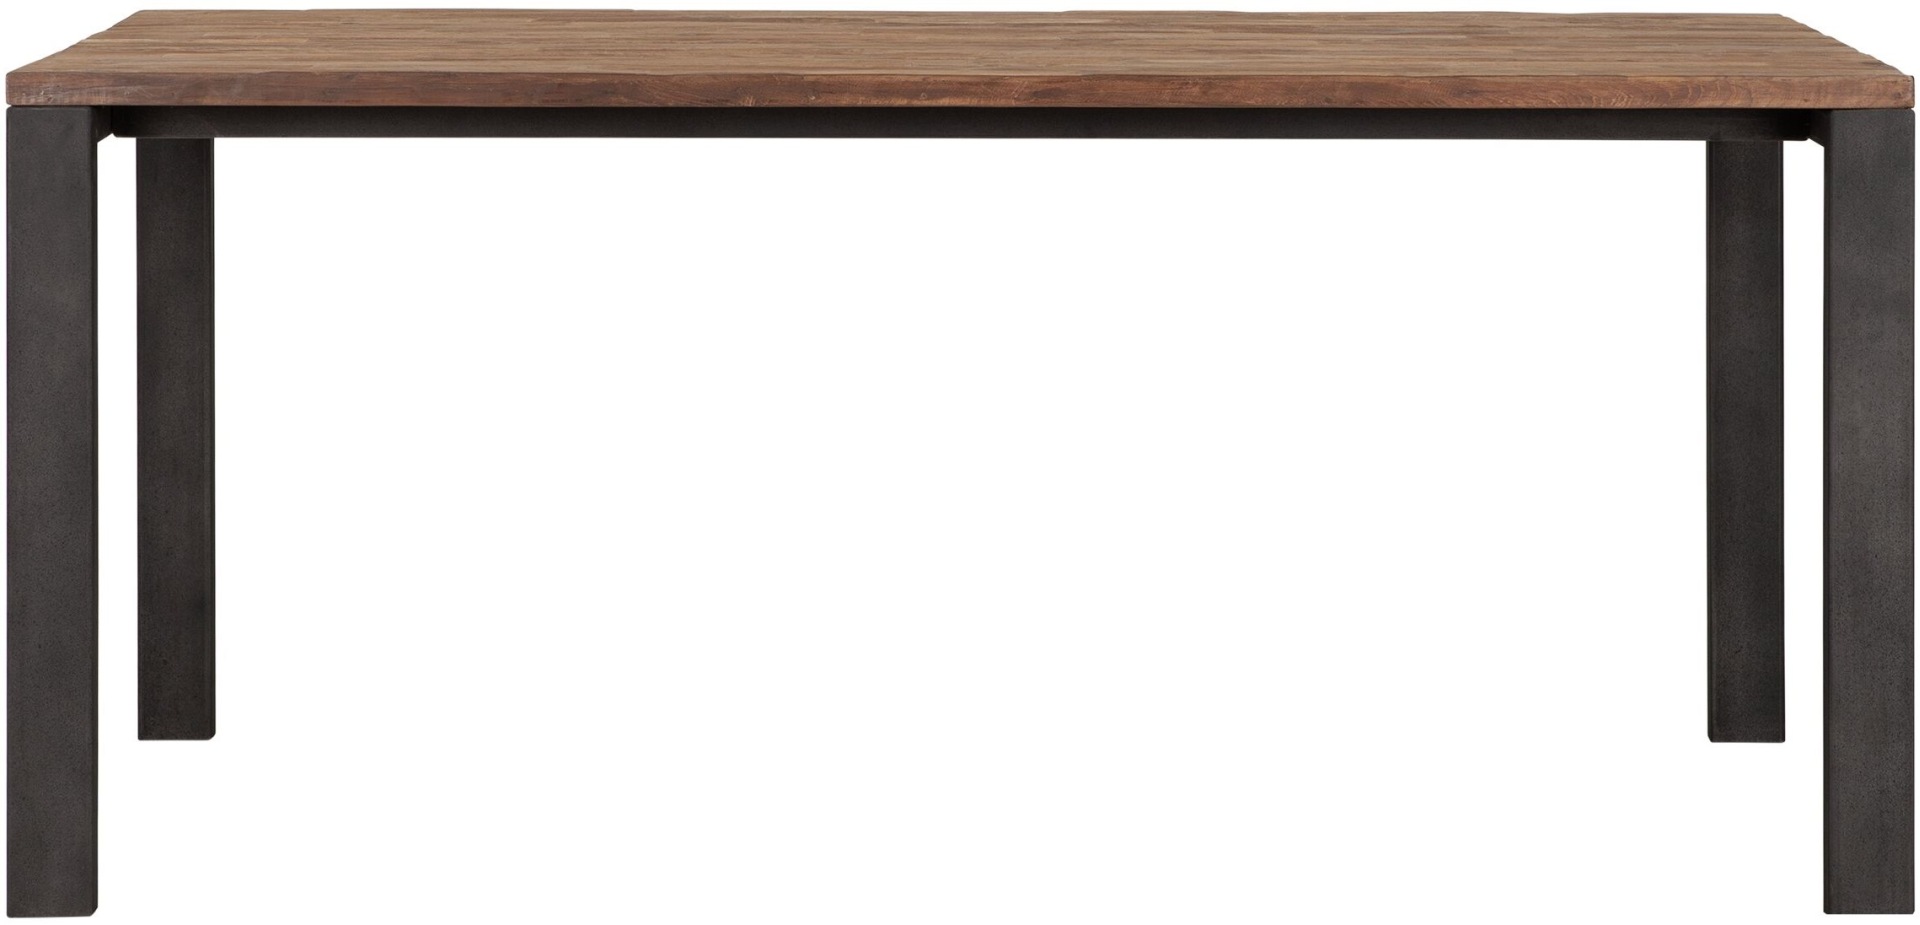 Der Esstisch Track überzeugt mit seinem modern und schlichtem Design. Gefertigt wurde der Tisch aus recyceltem Teakholz, welches einen natürlichen Farbton besitzt. Das Gestell ist aus Metall und ist Schwarz. Der Tisch hat eine Länge von 175 cm und eine Pl